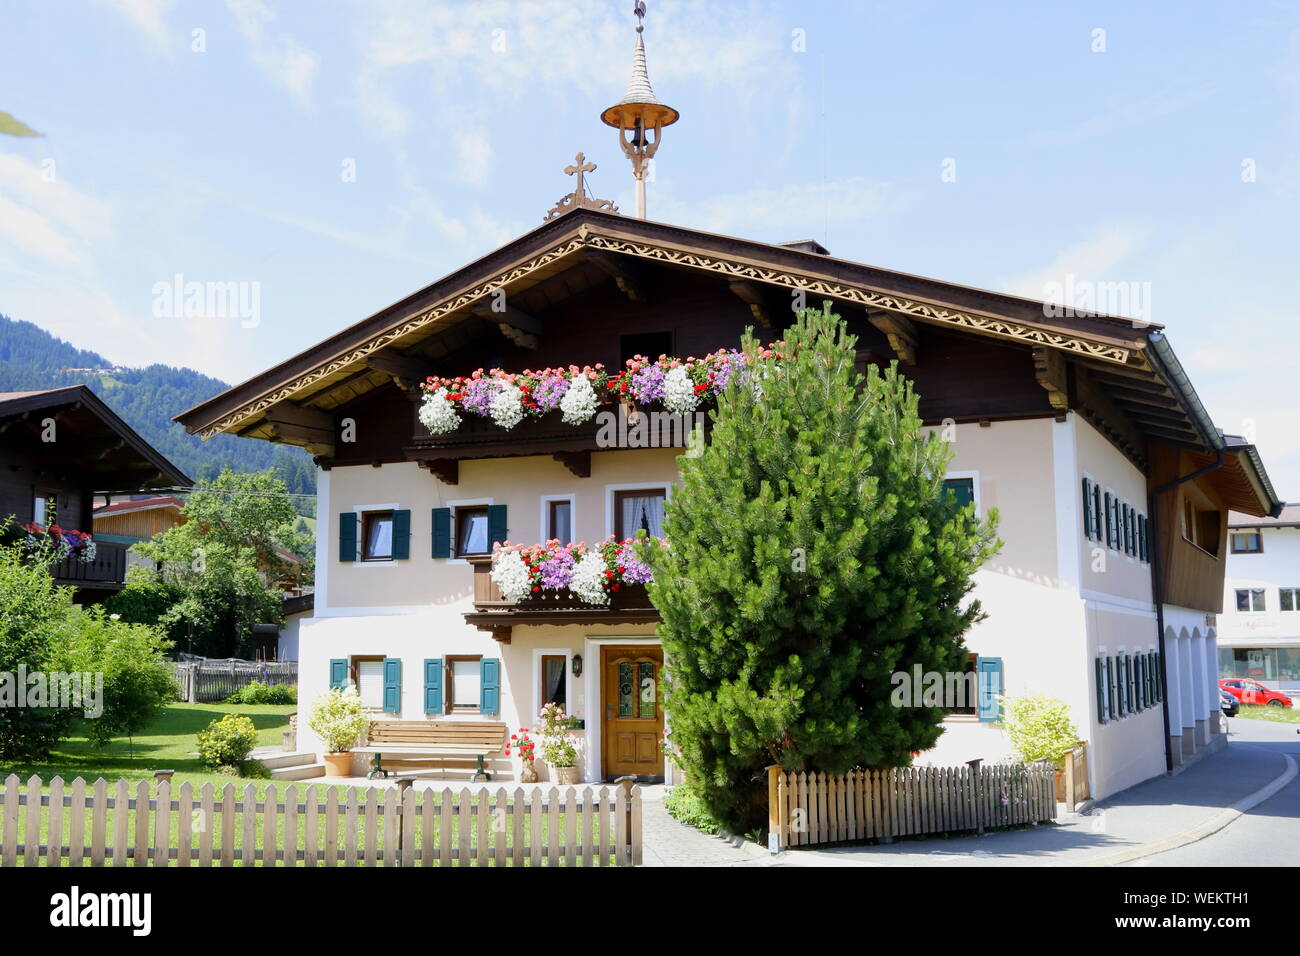 Baustil alpenländischen Typisches Haus im Foto de stock